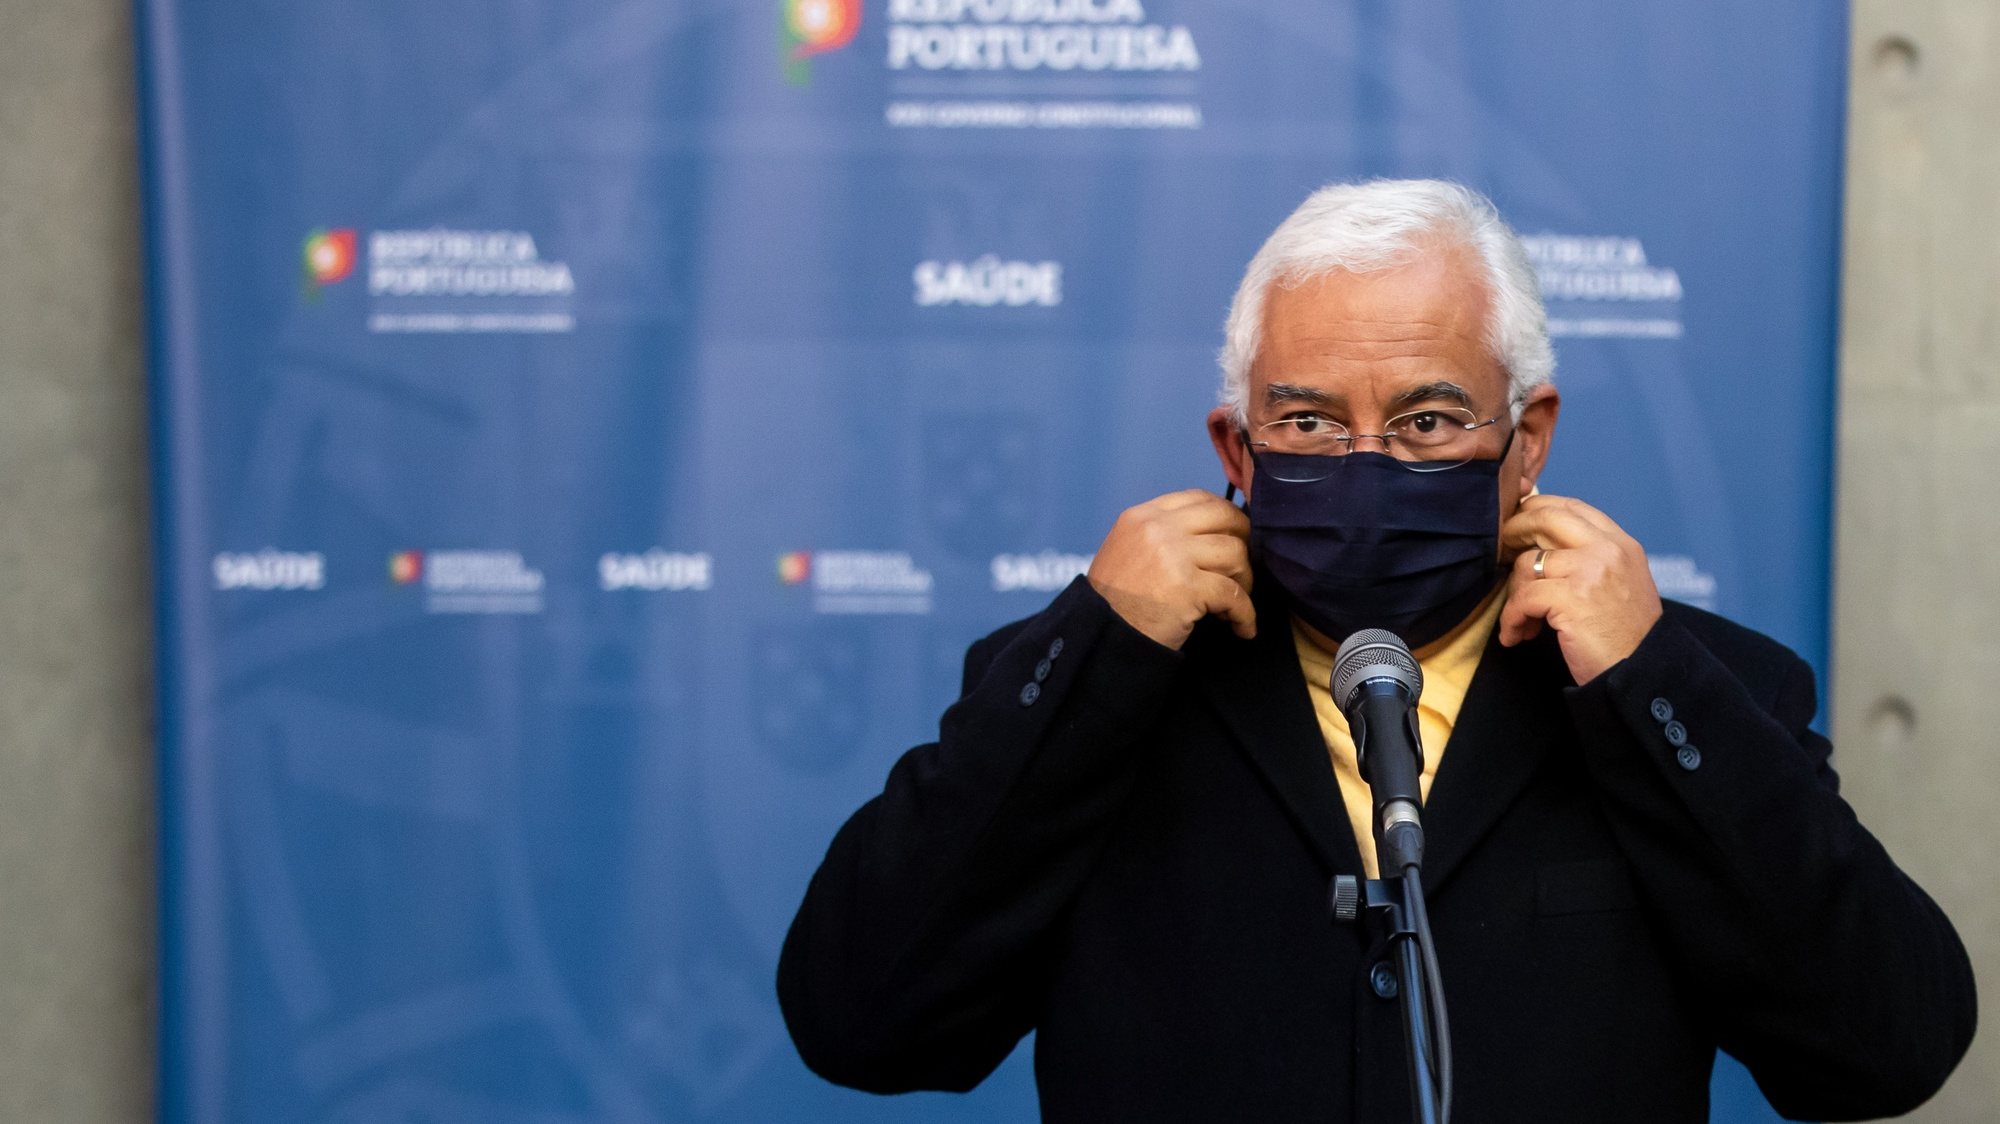 O primeiro-ministro, António Costa, retira a máscara protetora contra a Covid-19 antes de prestar declarações aos jornalistas após a 14ª sessão de apresentação da “Situação epidemiológica da Covid-19 em Portugal”, na sede do Infarmed, em Lisboa, 12 de janeiro de 2021. JOSÉ SENA GOULÃO/LUSA